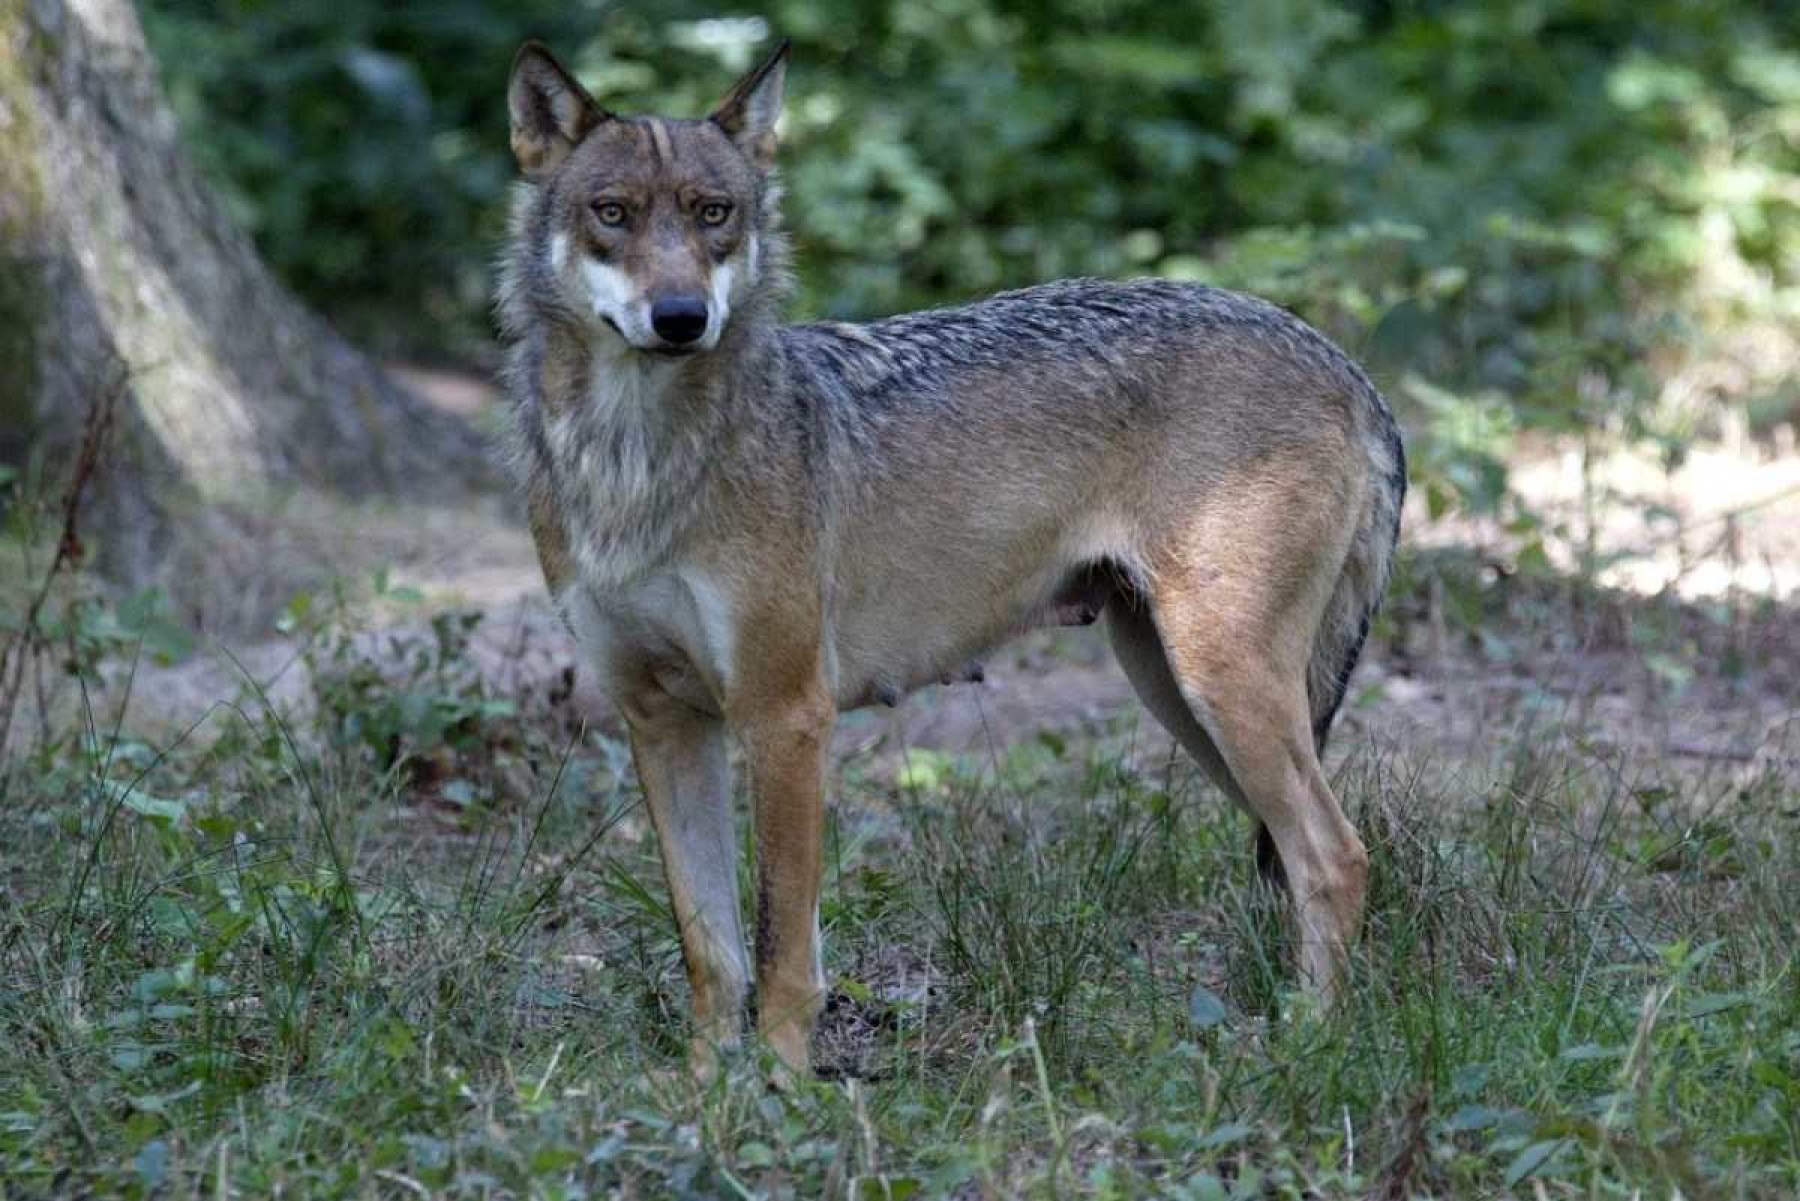 Lobos atacam e deixam mulher gravemente ferida em zoológico na França